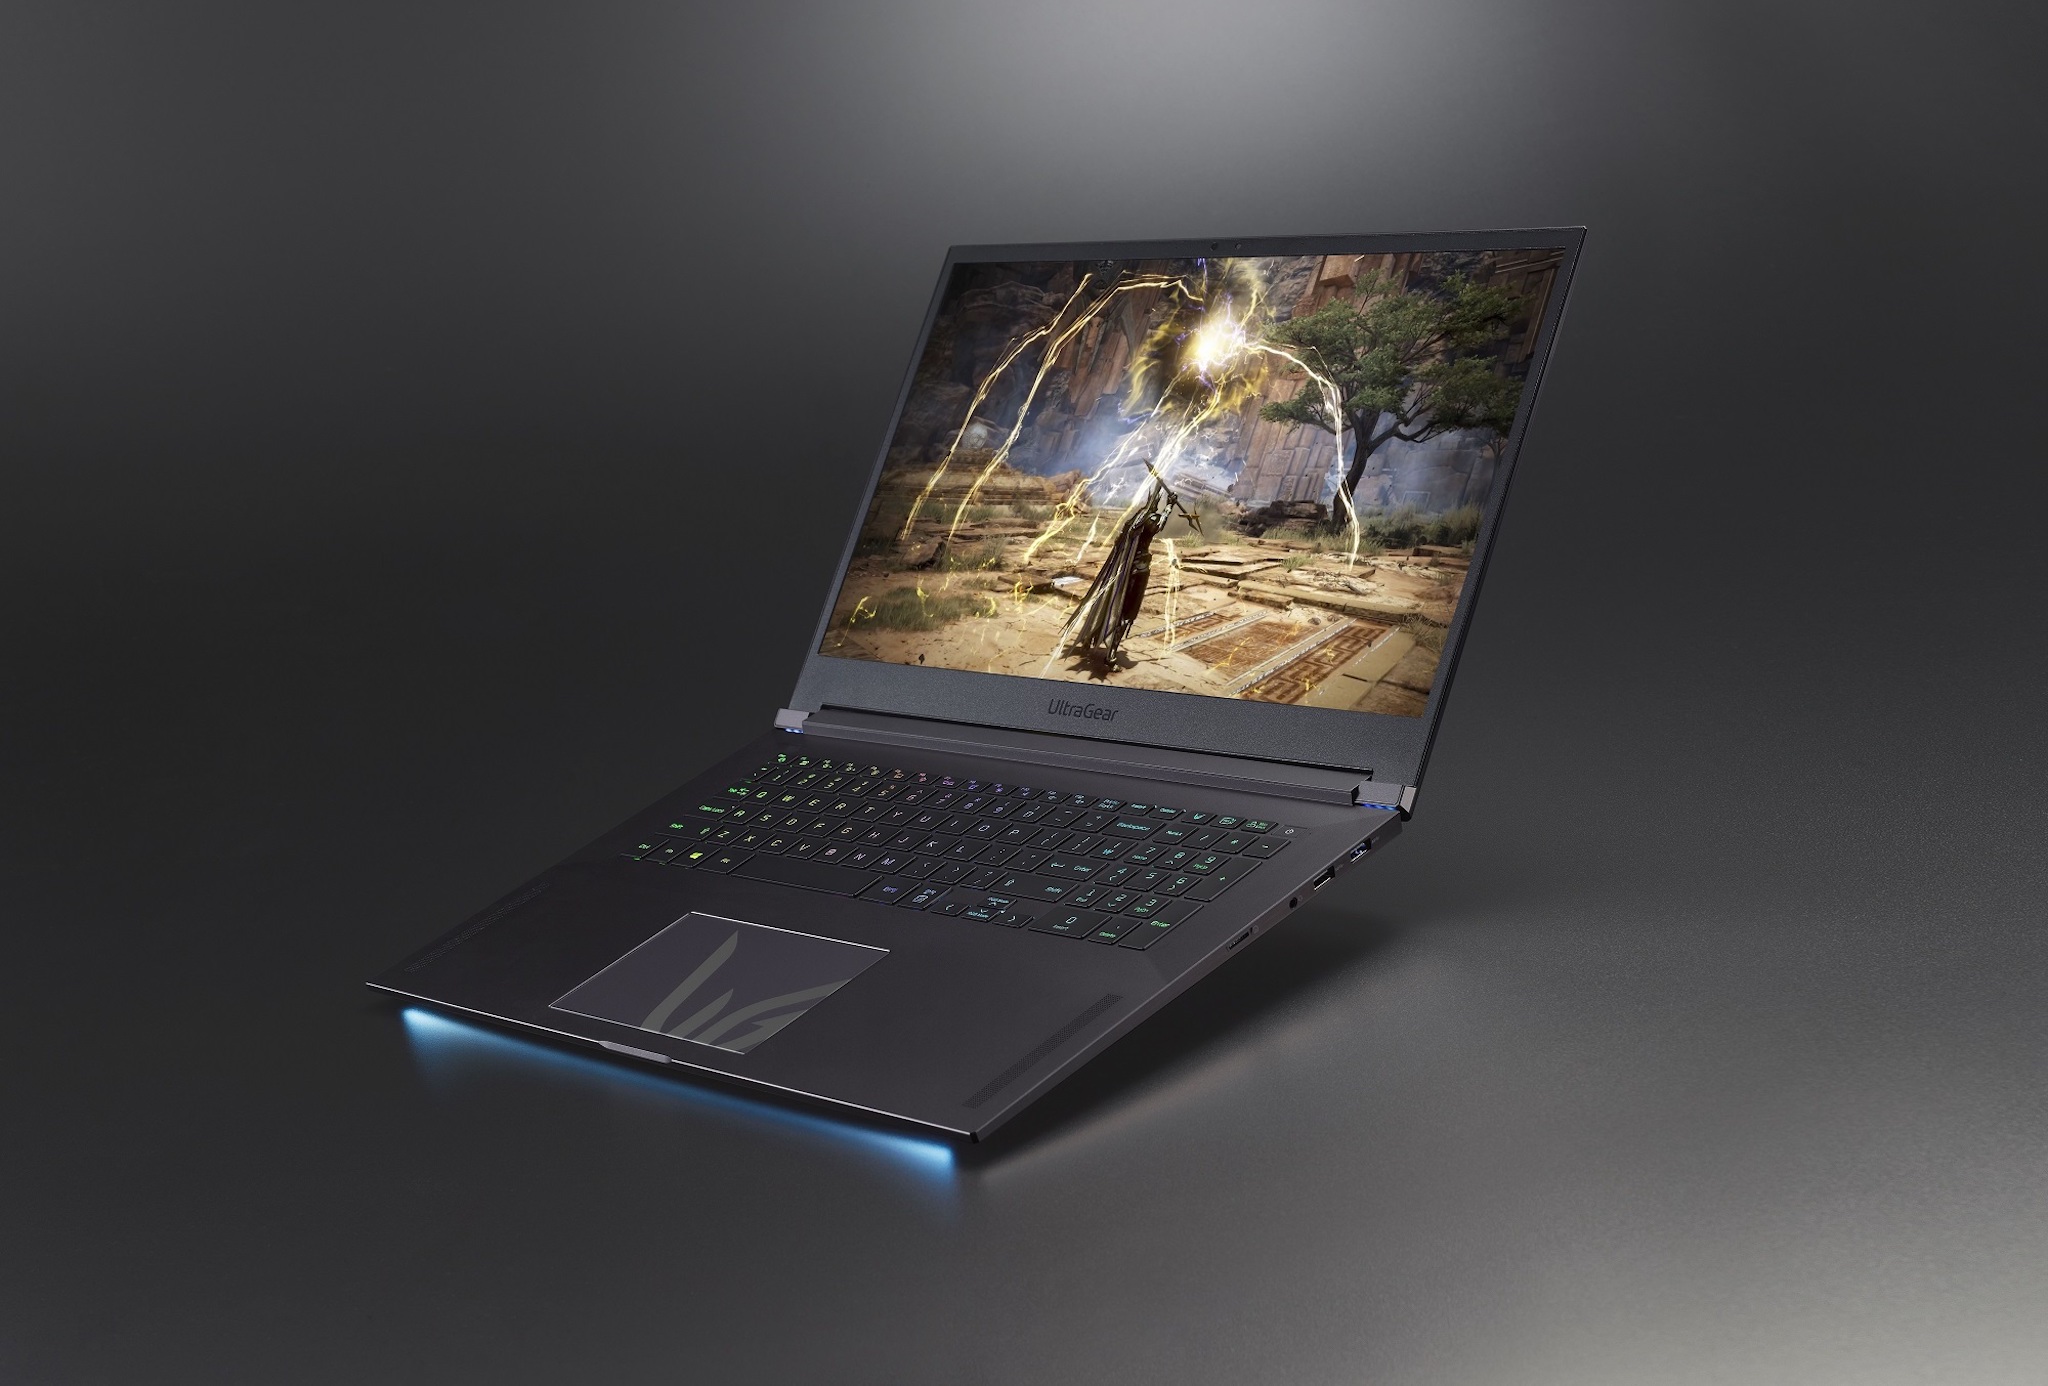 #CES22: LG giới thiệu laptop gaming đầu tiên: RTX3080 Max-Q, màn hình 300Hz, LED RGB per-key